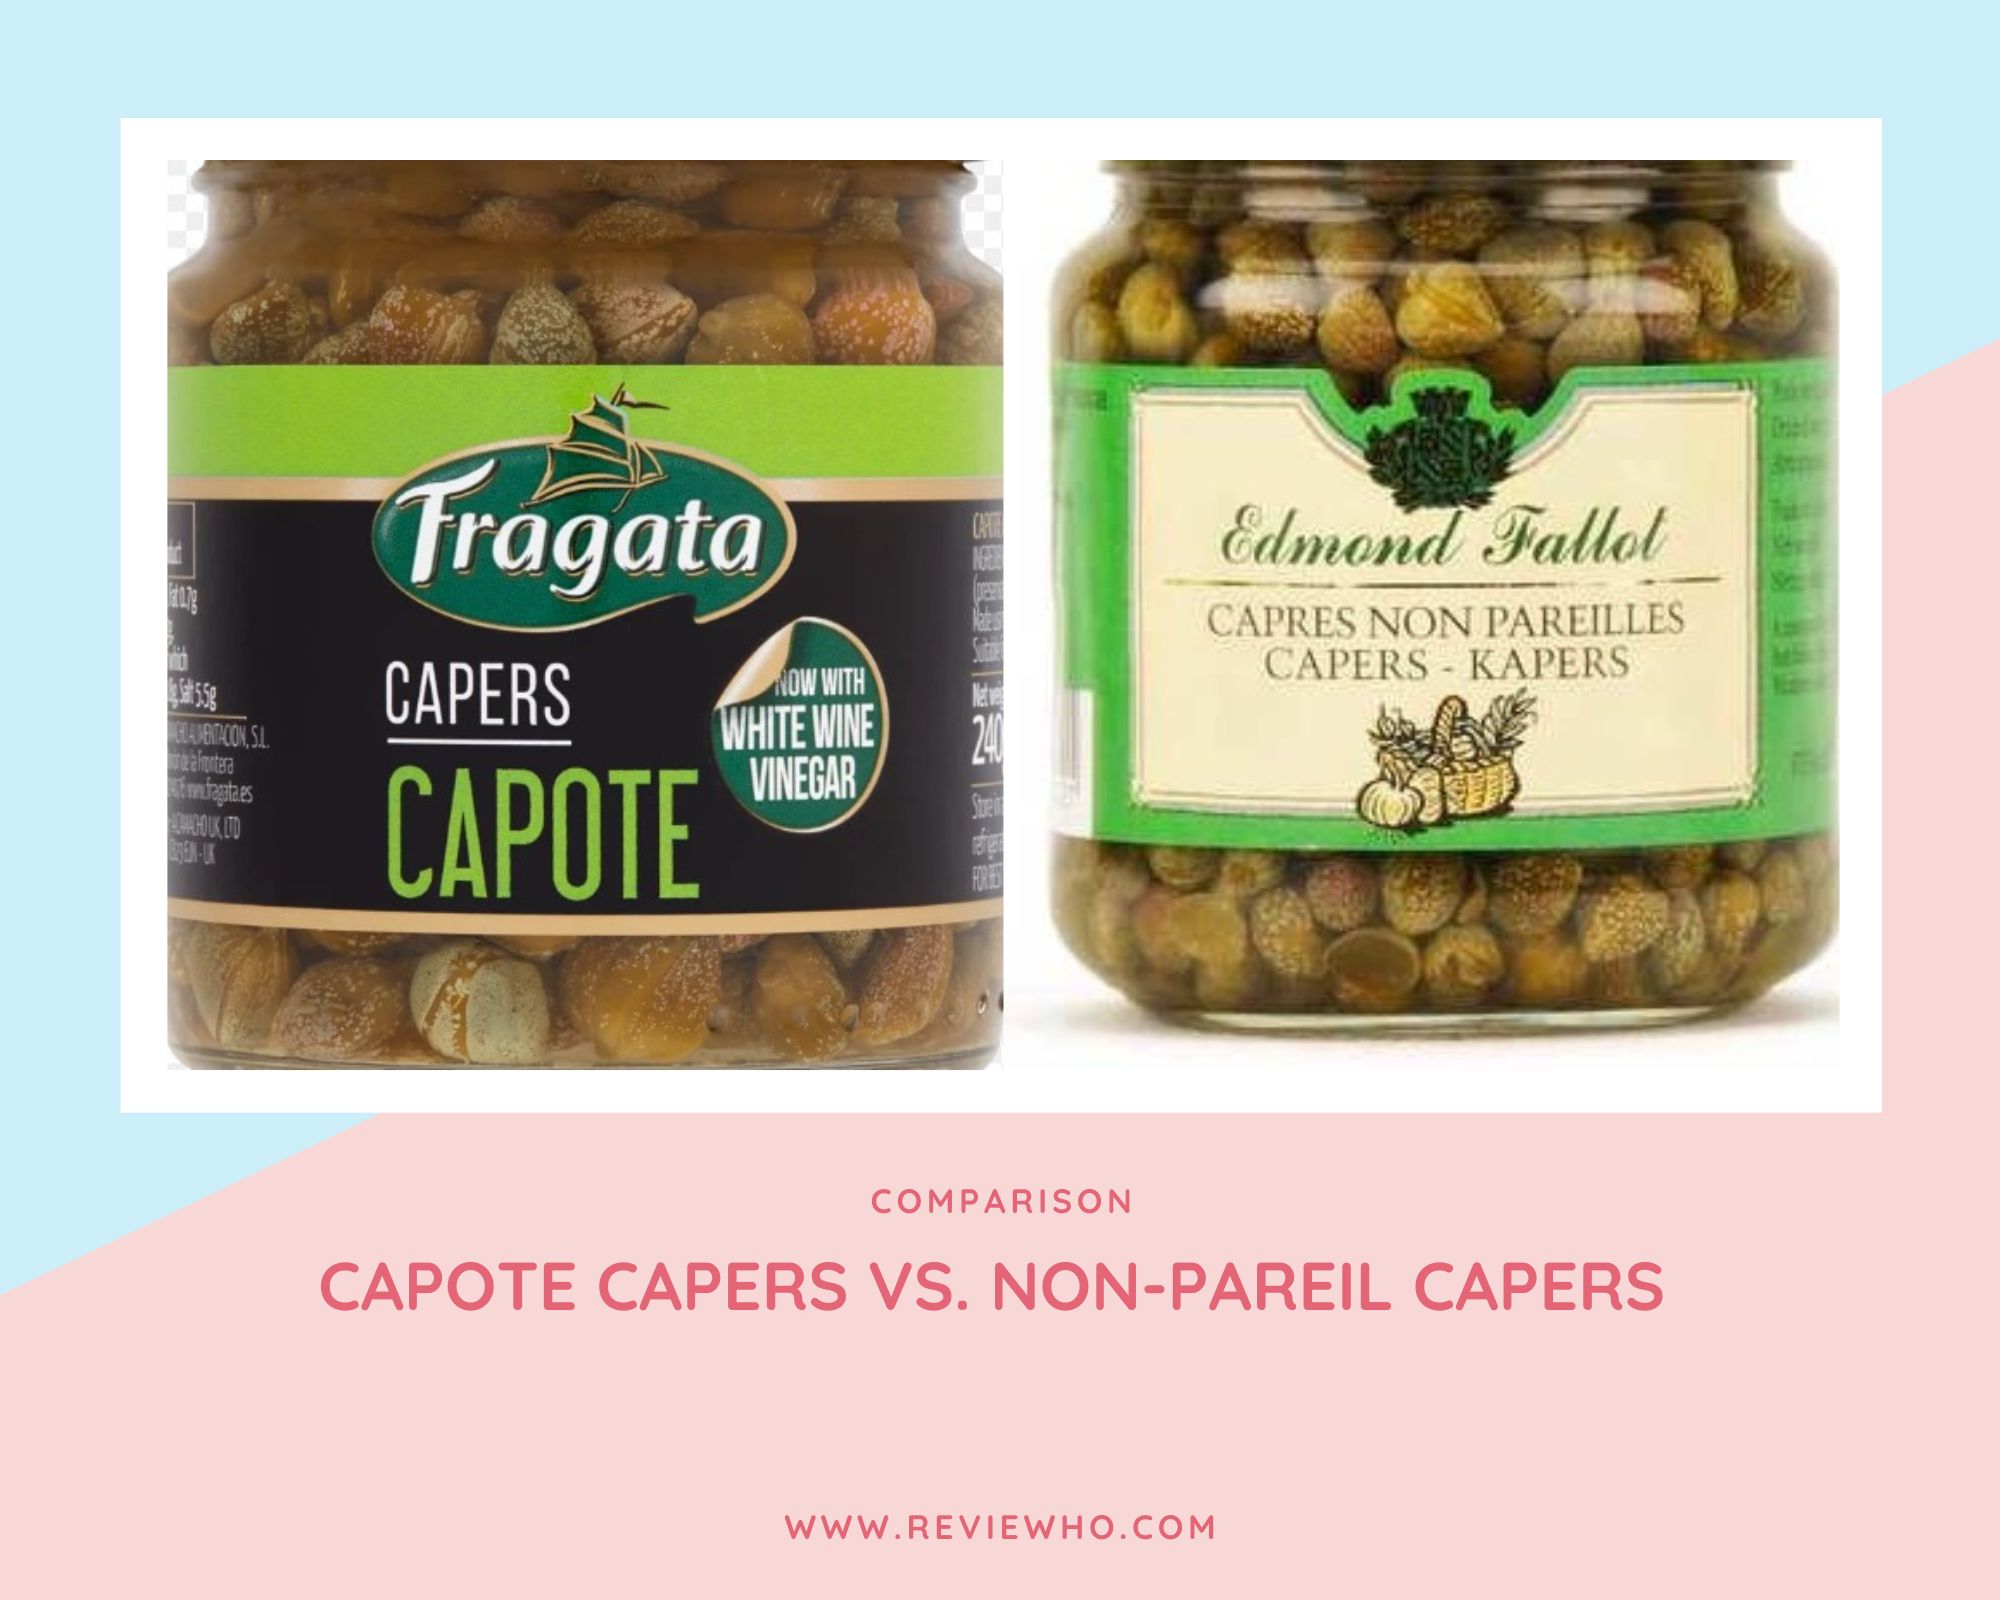 Capote Capers vs. Non-pareil Capers